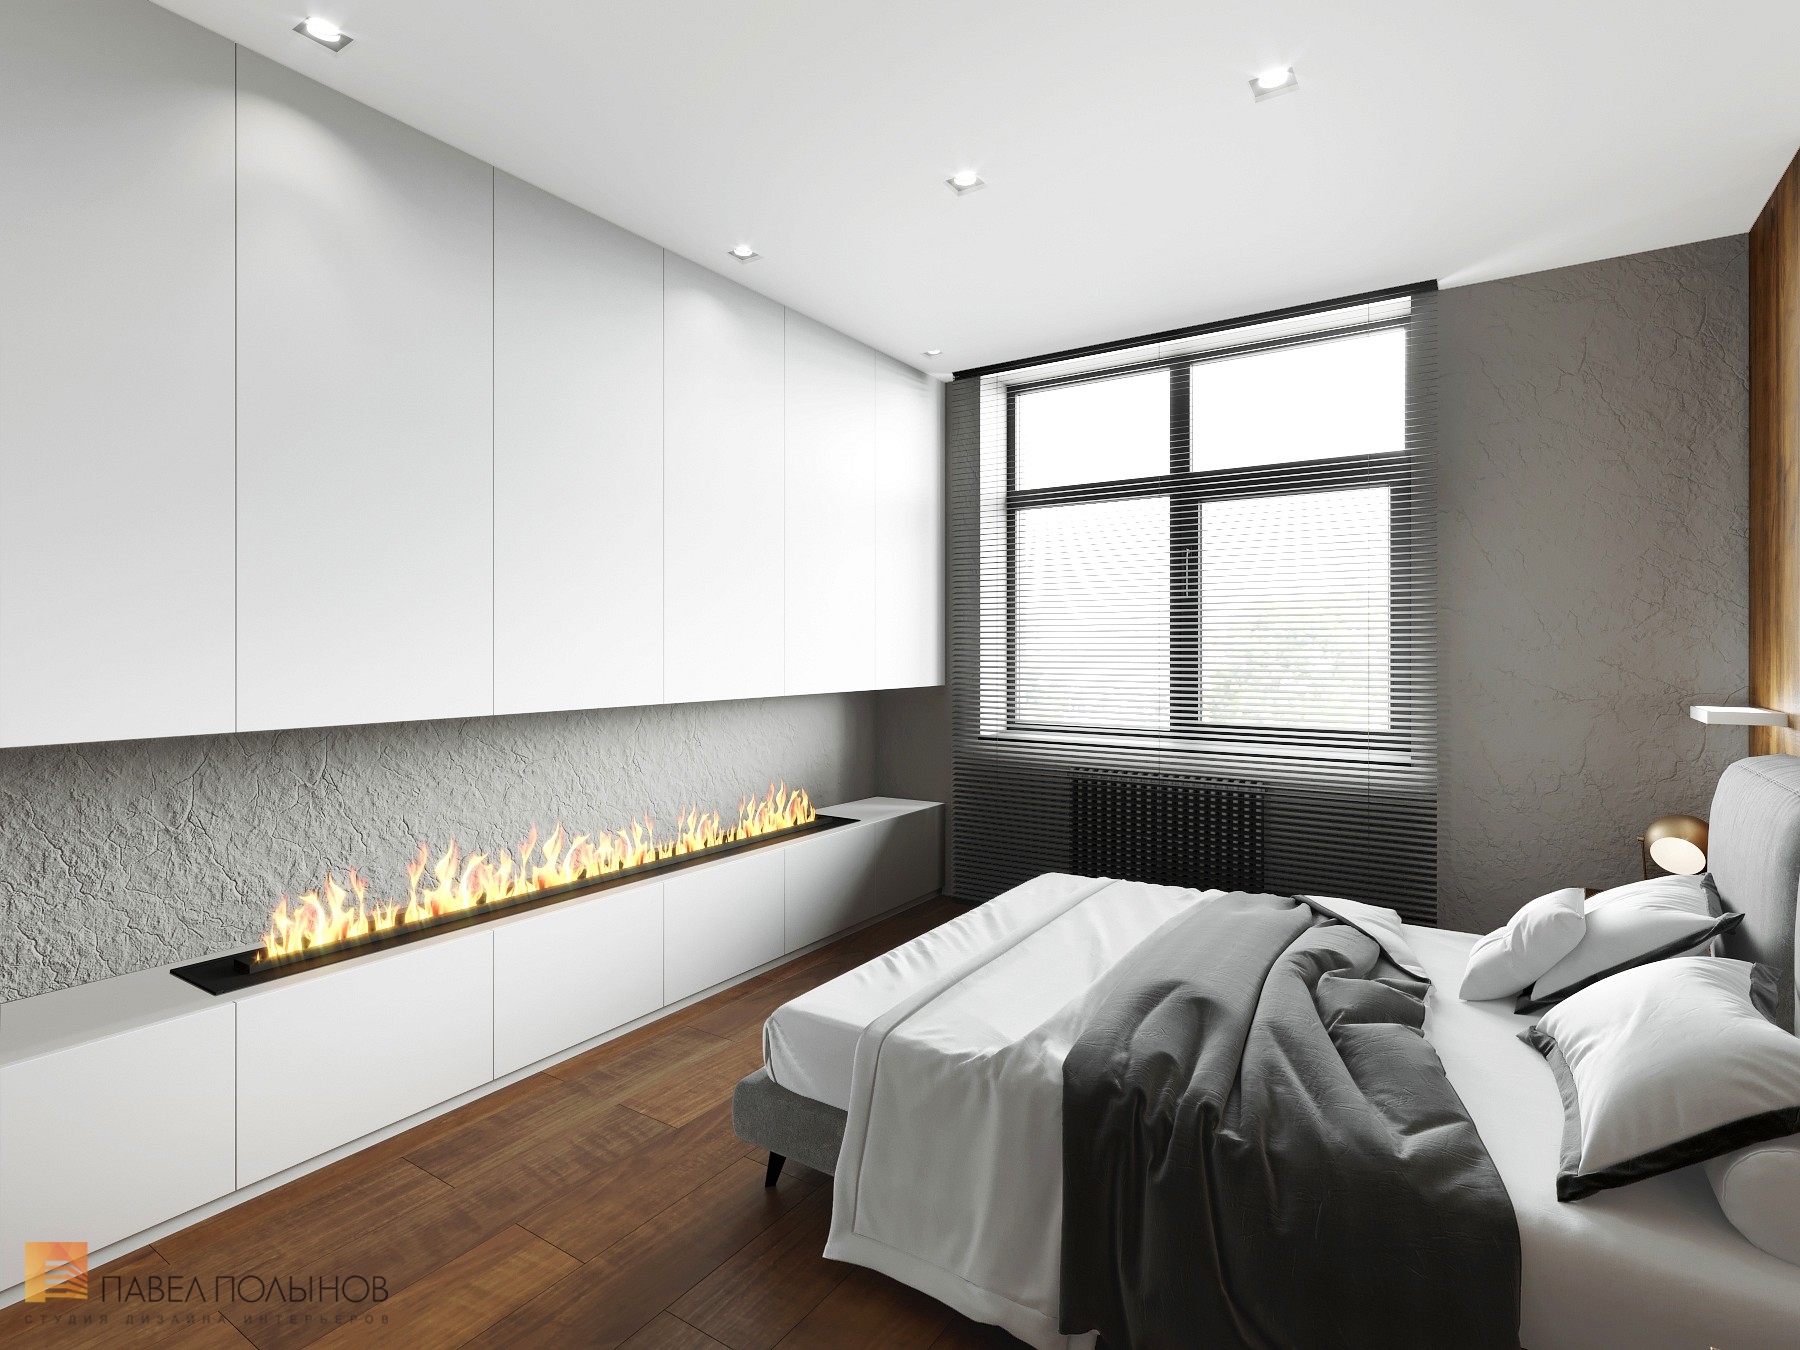 Фото дизайн интерьера спальни из проекта «Квартира в стиле минимализм в ЖК «Елагин Апарт», 40 кв.м.»